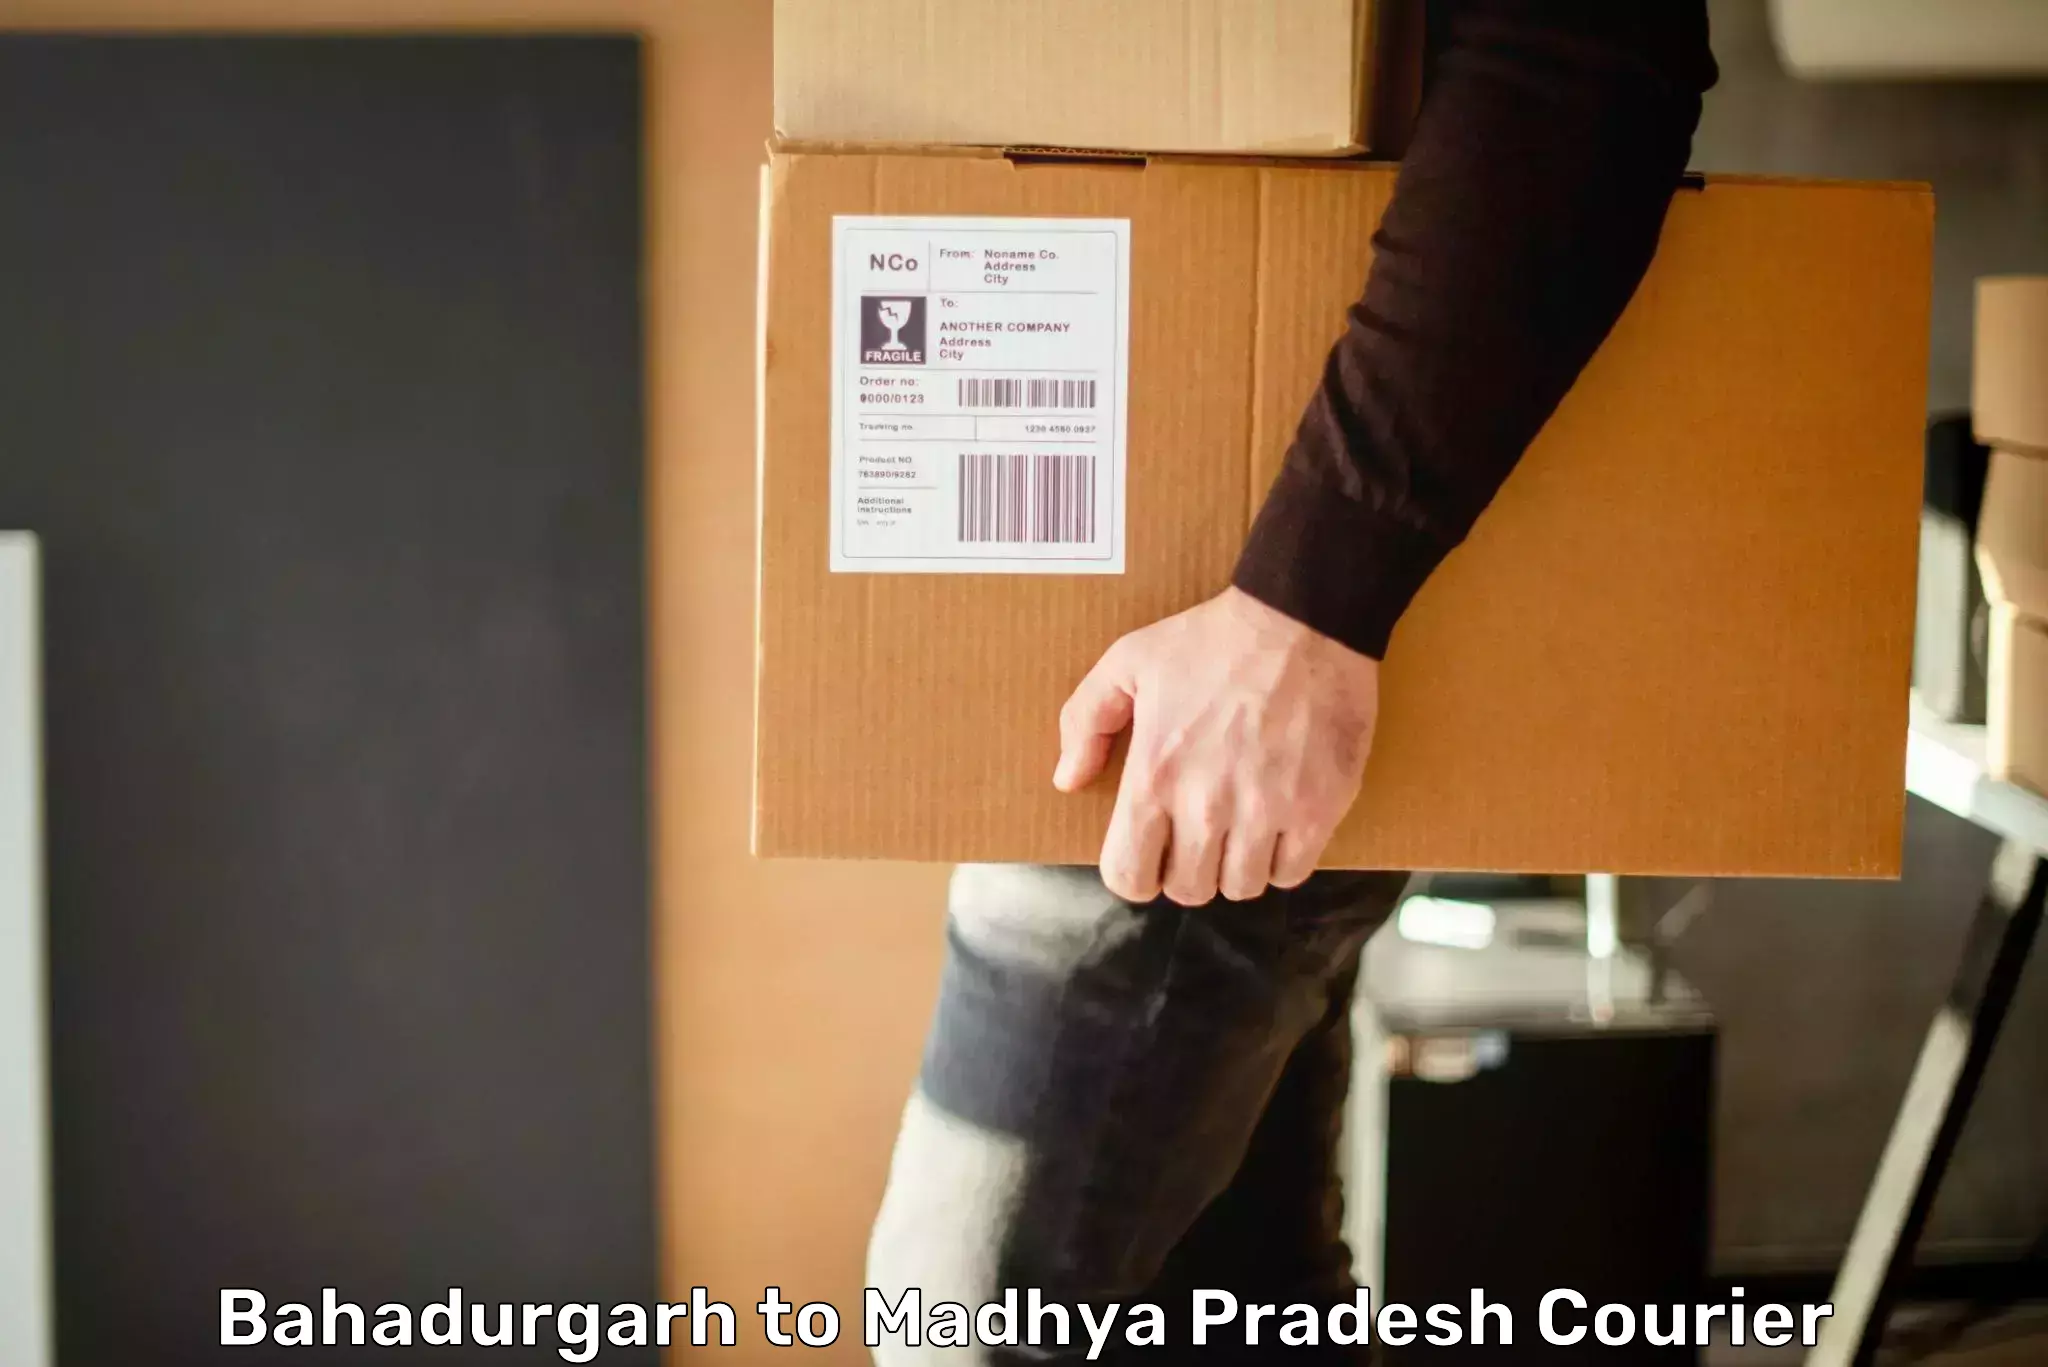 Lightweight courier Bahadurgarh to Chapda